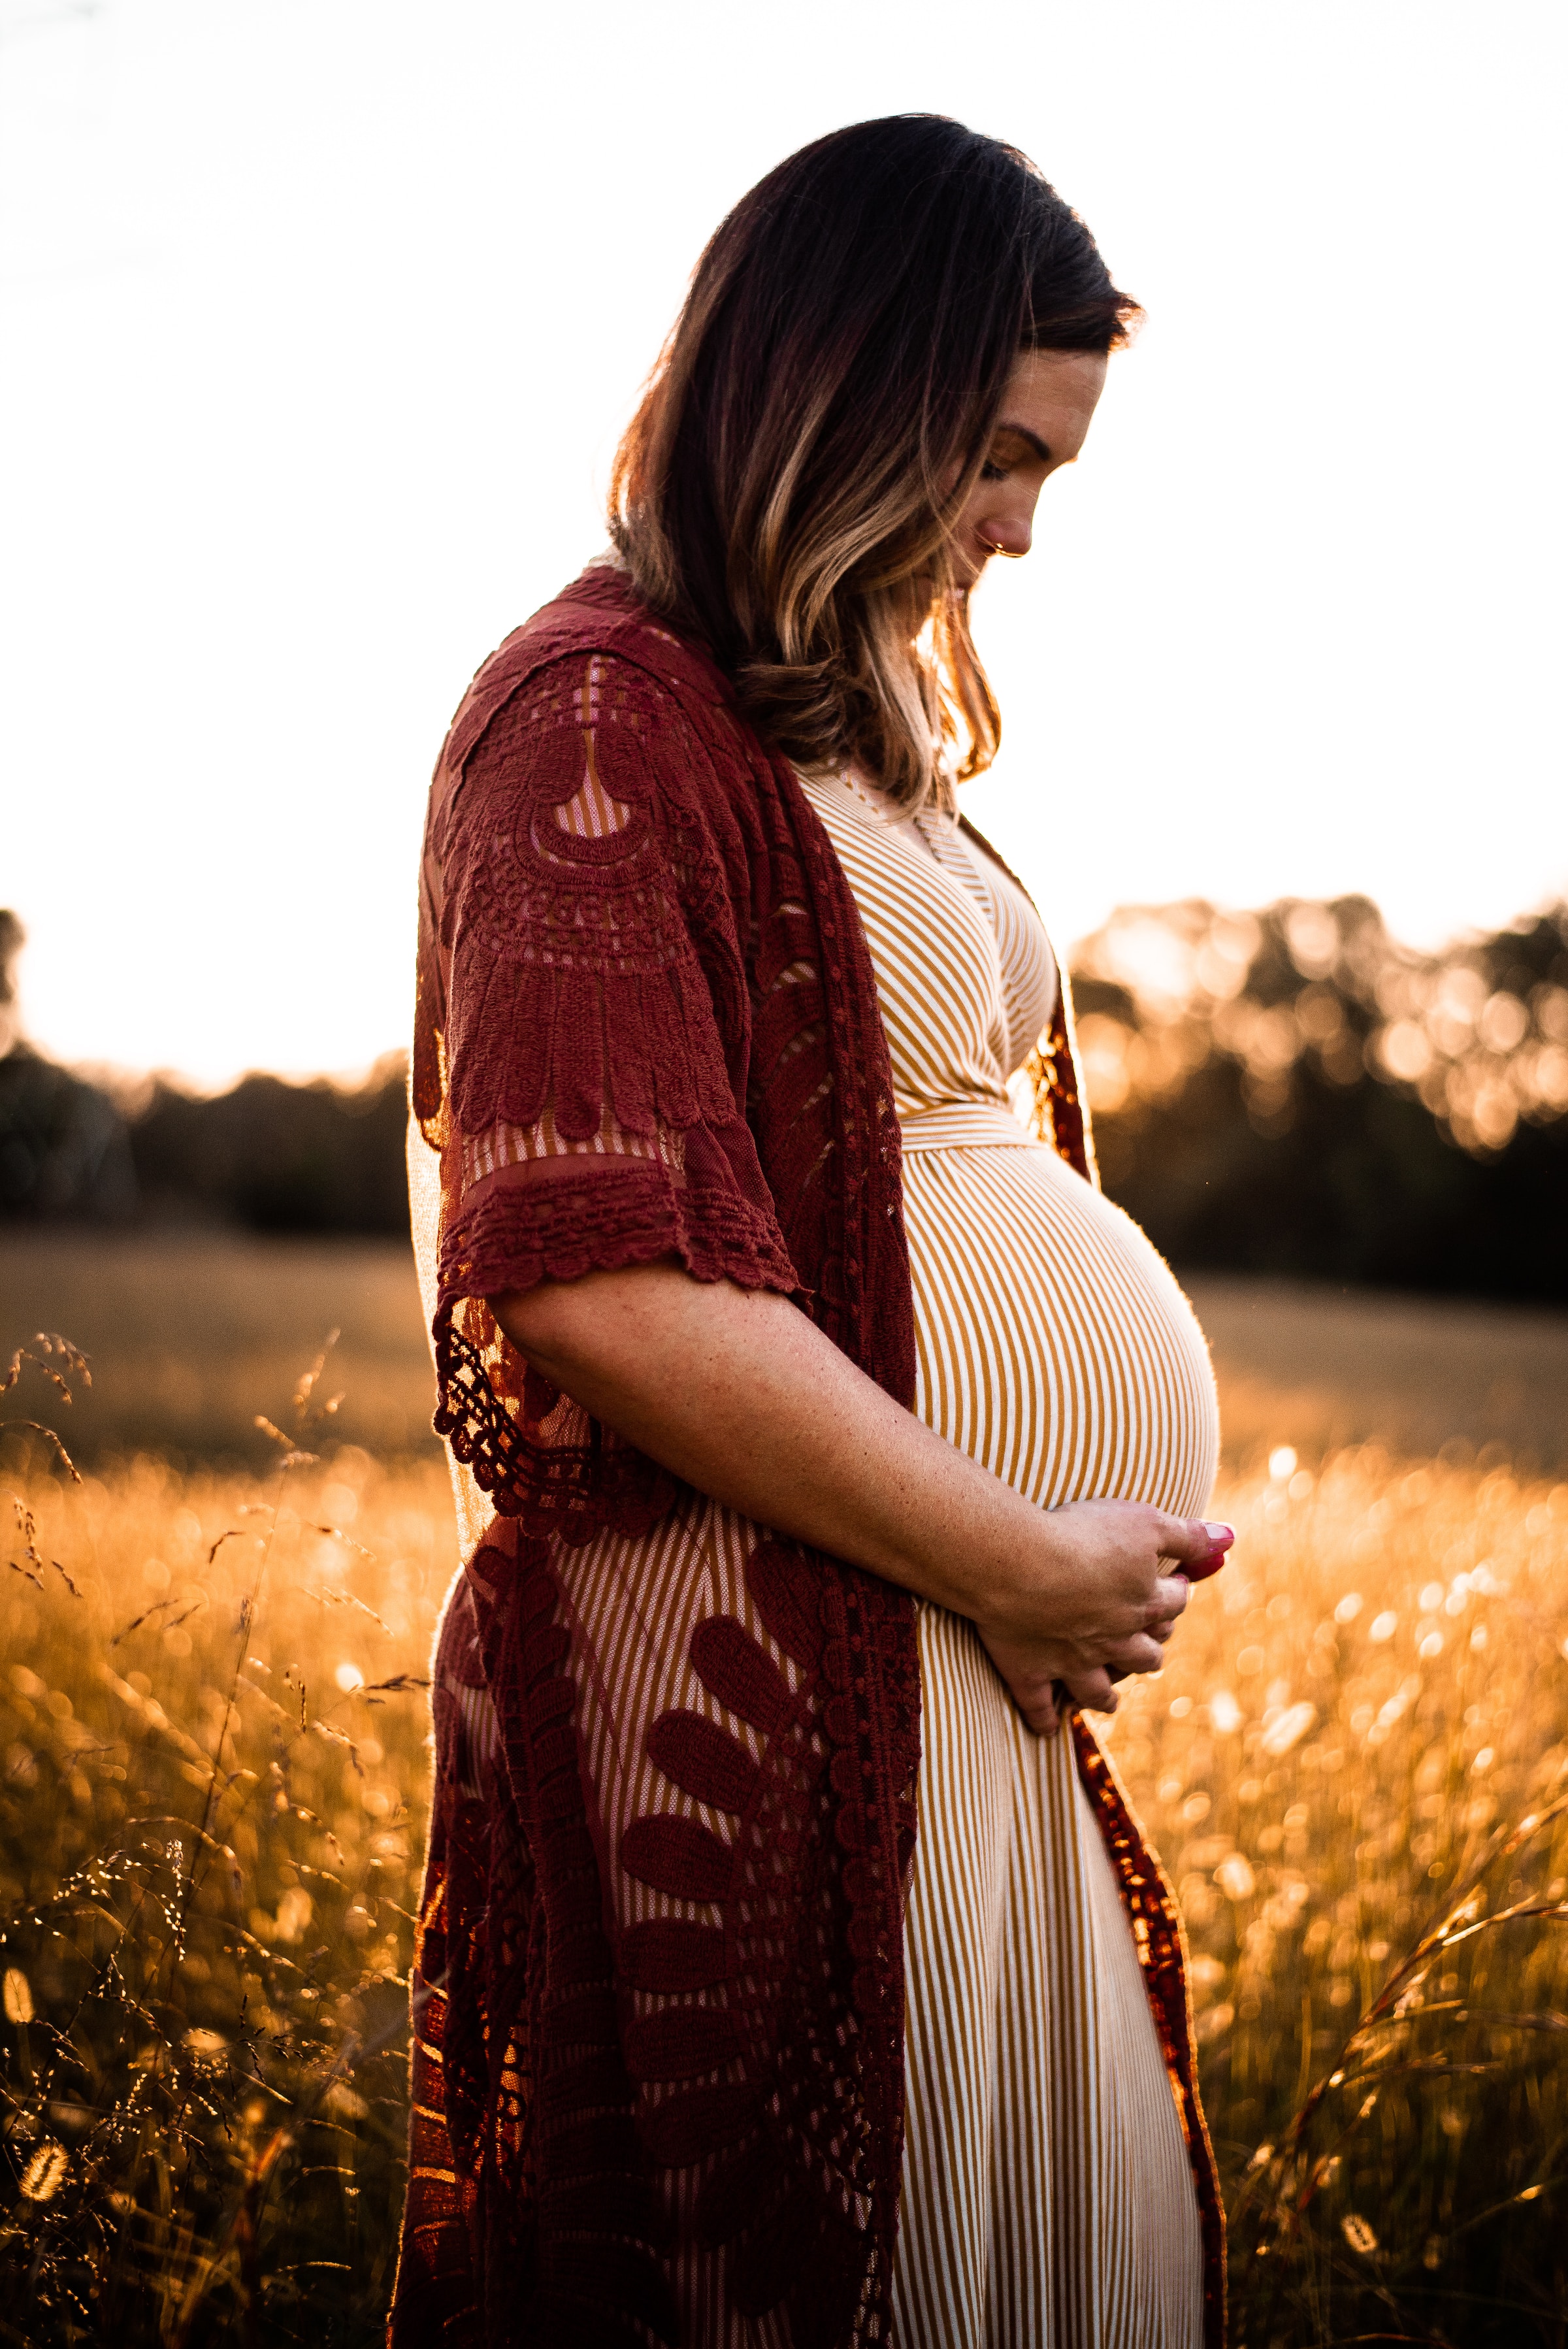 Une femme enceinte tenant son baby bump | Source : Unsplash